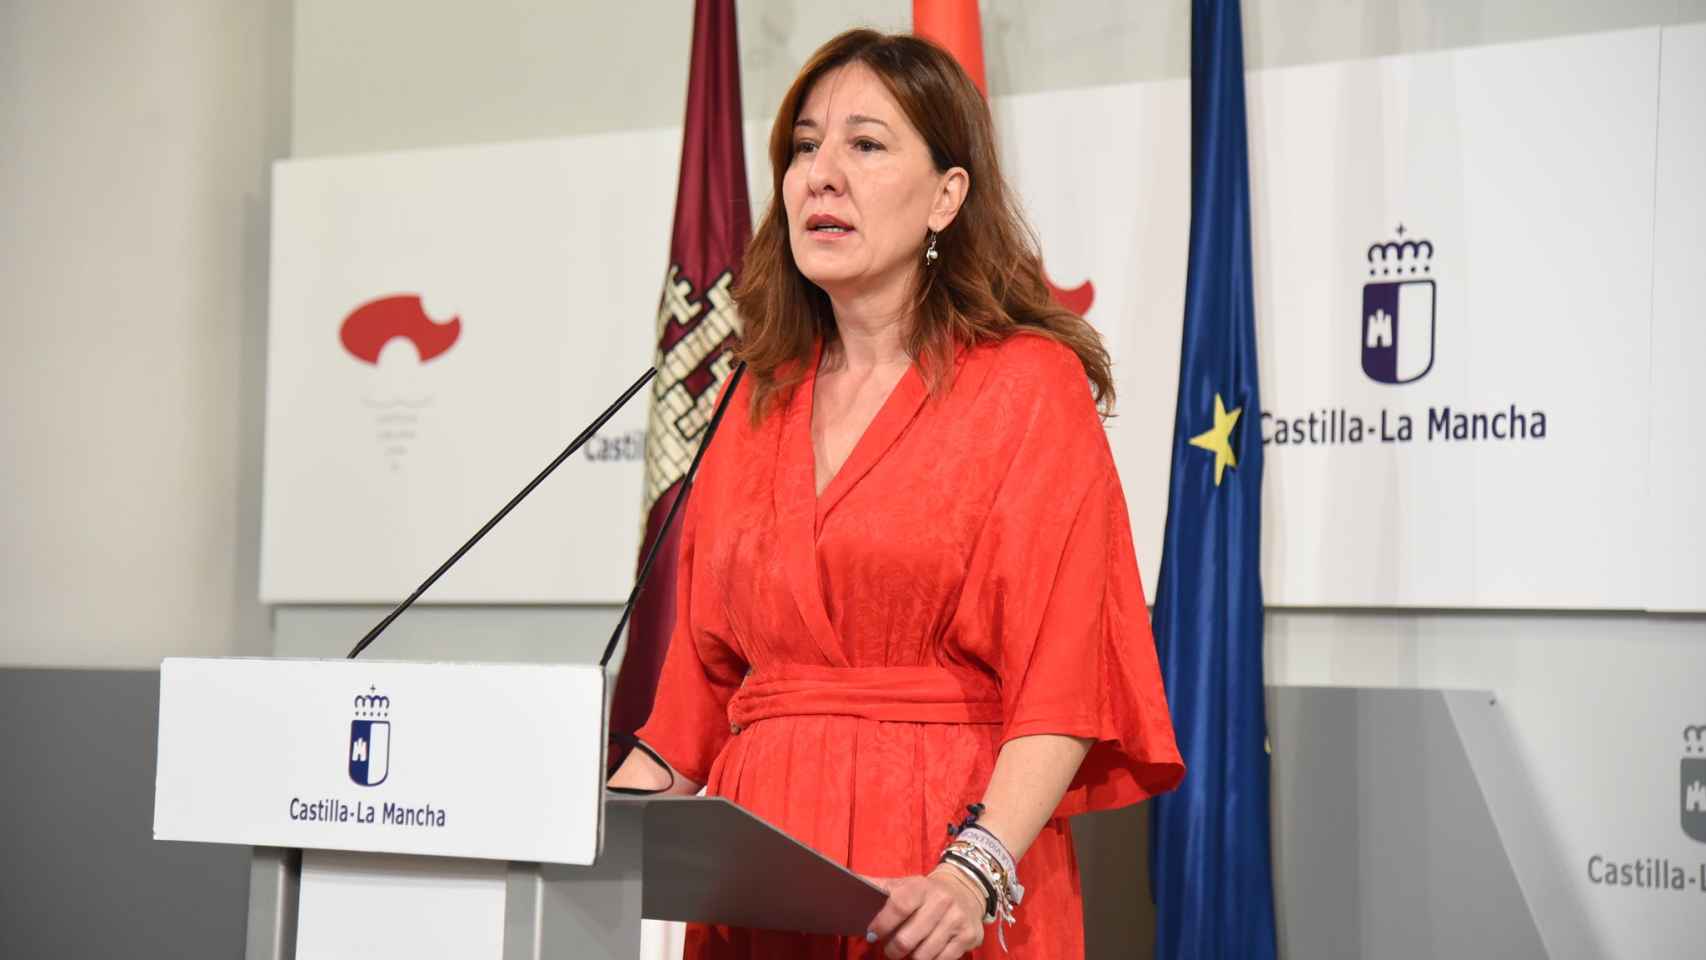 Blanca Fernández, portavoz del Gobierno de Castilla-La Mancha. Foto: JCCM